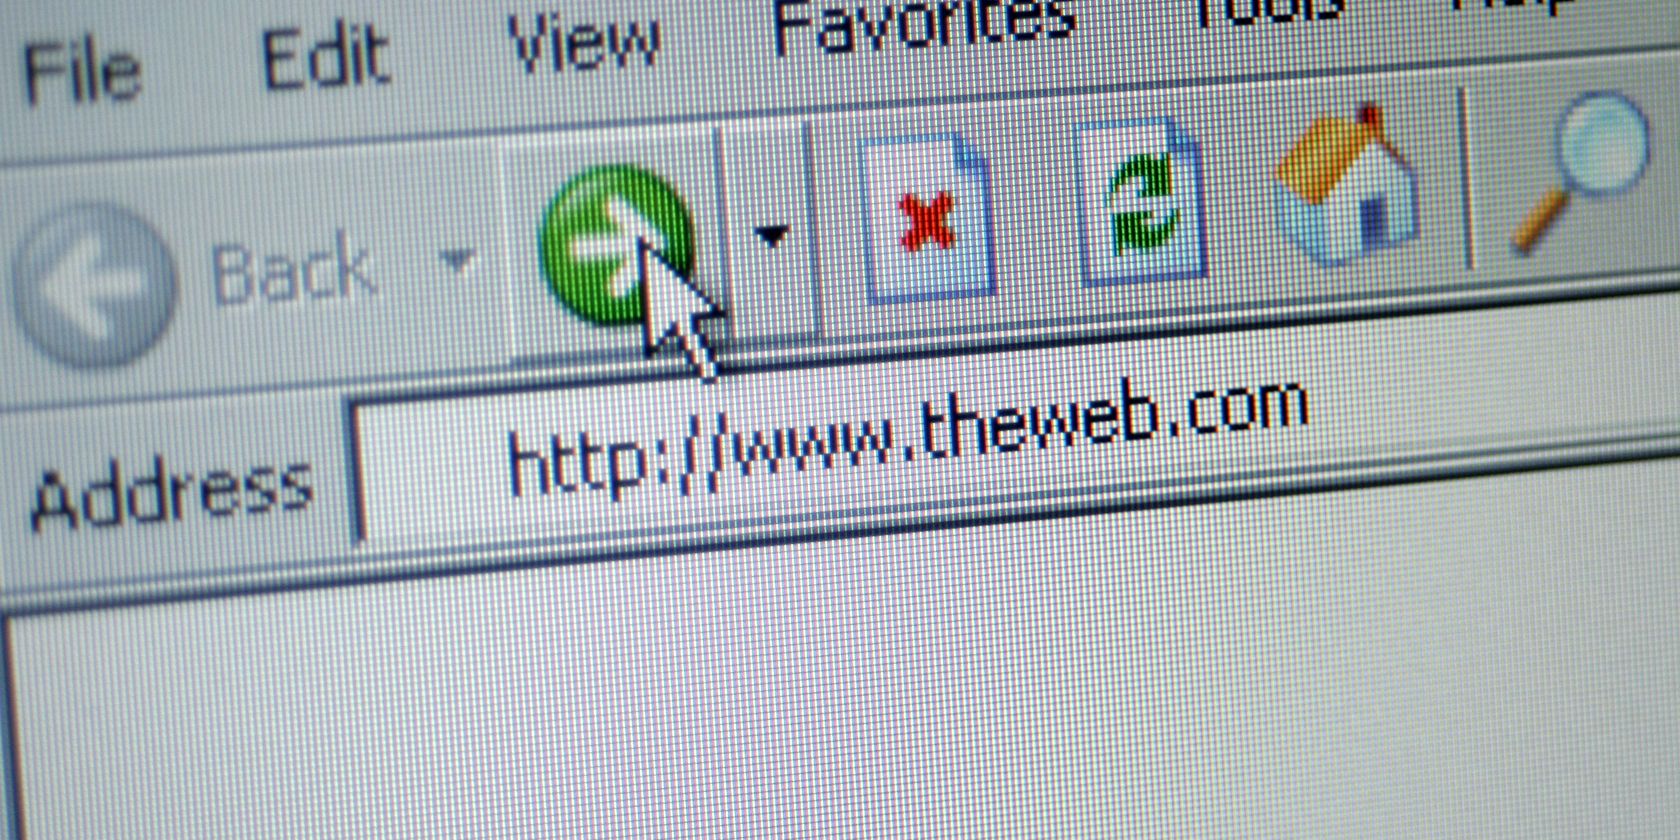 An address bar in Internet Explorer